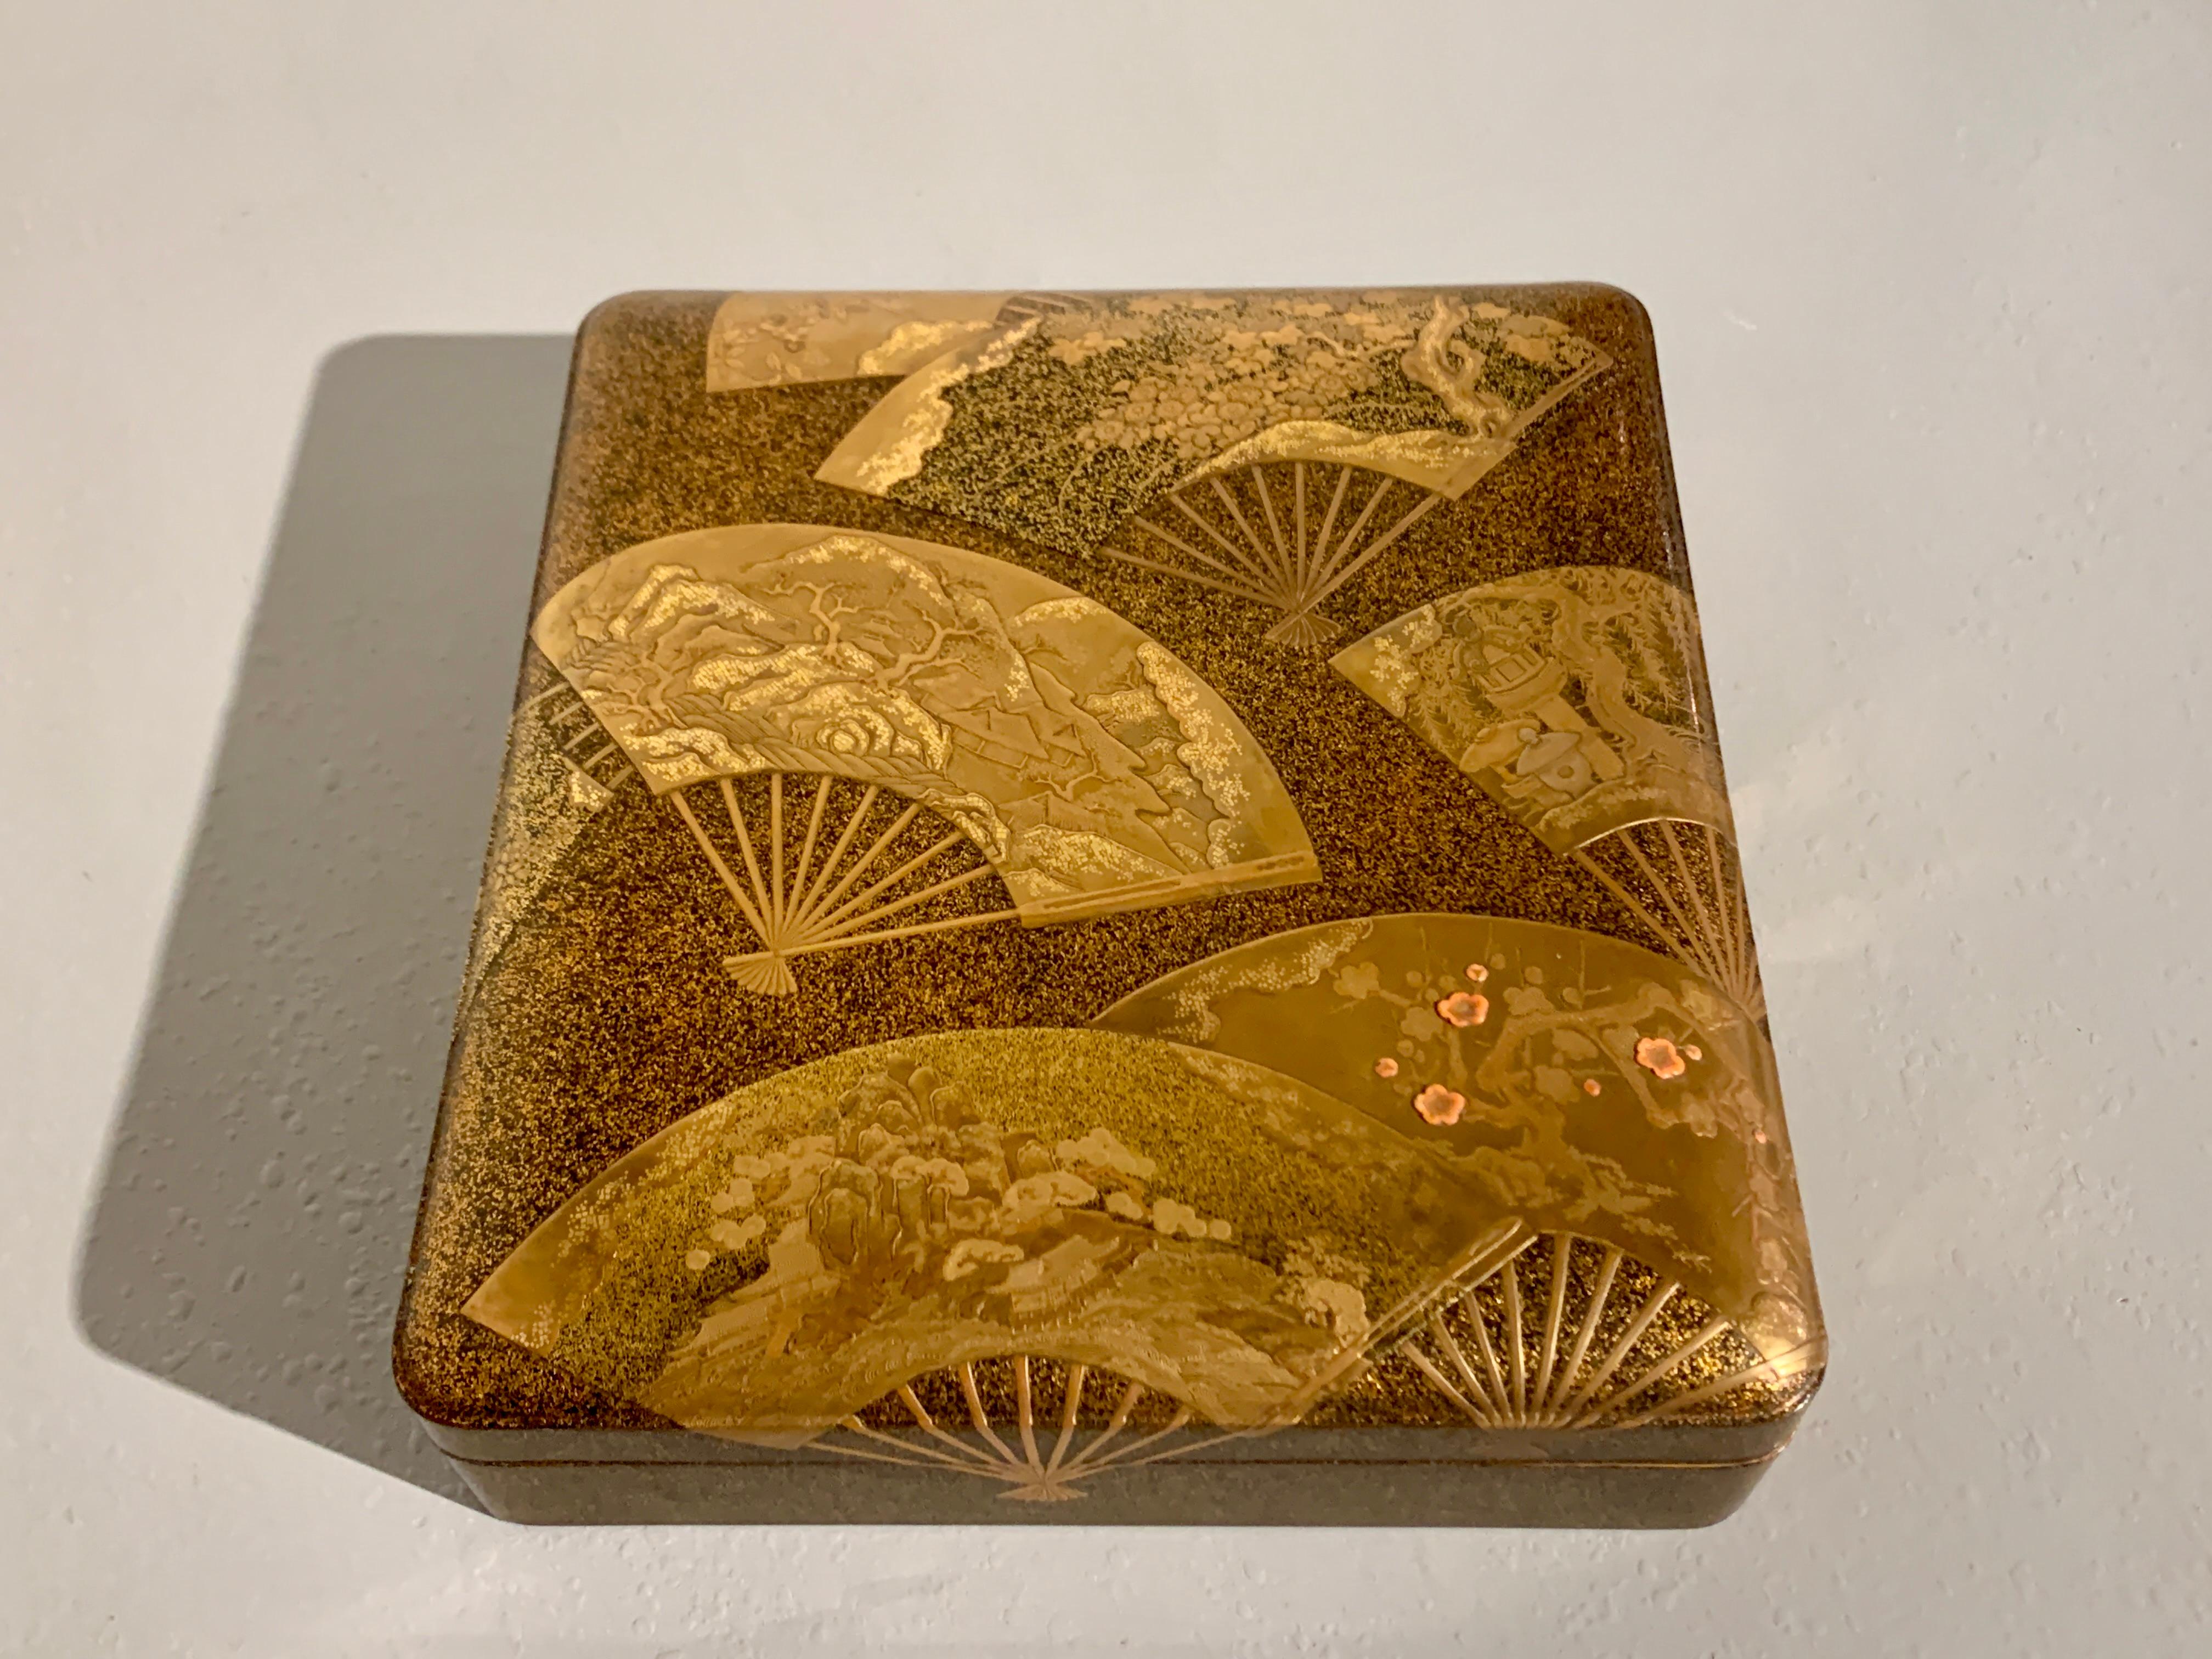 Une spectaculaire boîte à couvercle en laque japonaise maki-e, peut-être une boîte à écrire, suzuribako, décorée d'images d'éventails pliants, ogi, période Edo, début du 19e siècle, Japon.

Cette boîte basse et rectangulaire aux angles arrondis est